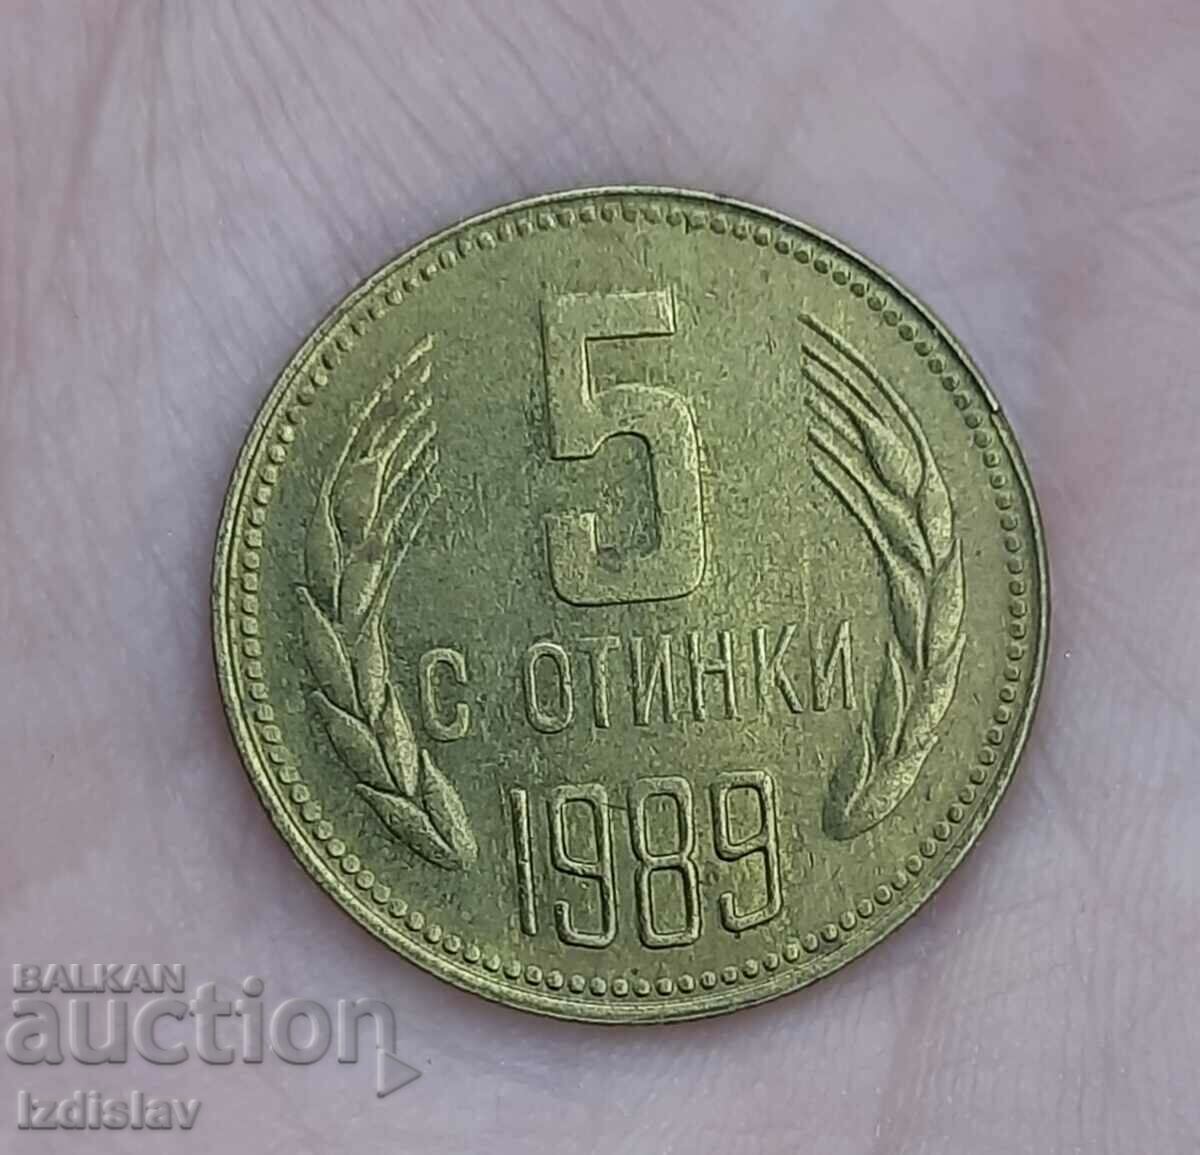 5 Bulgarian cents, an interesting curiosity